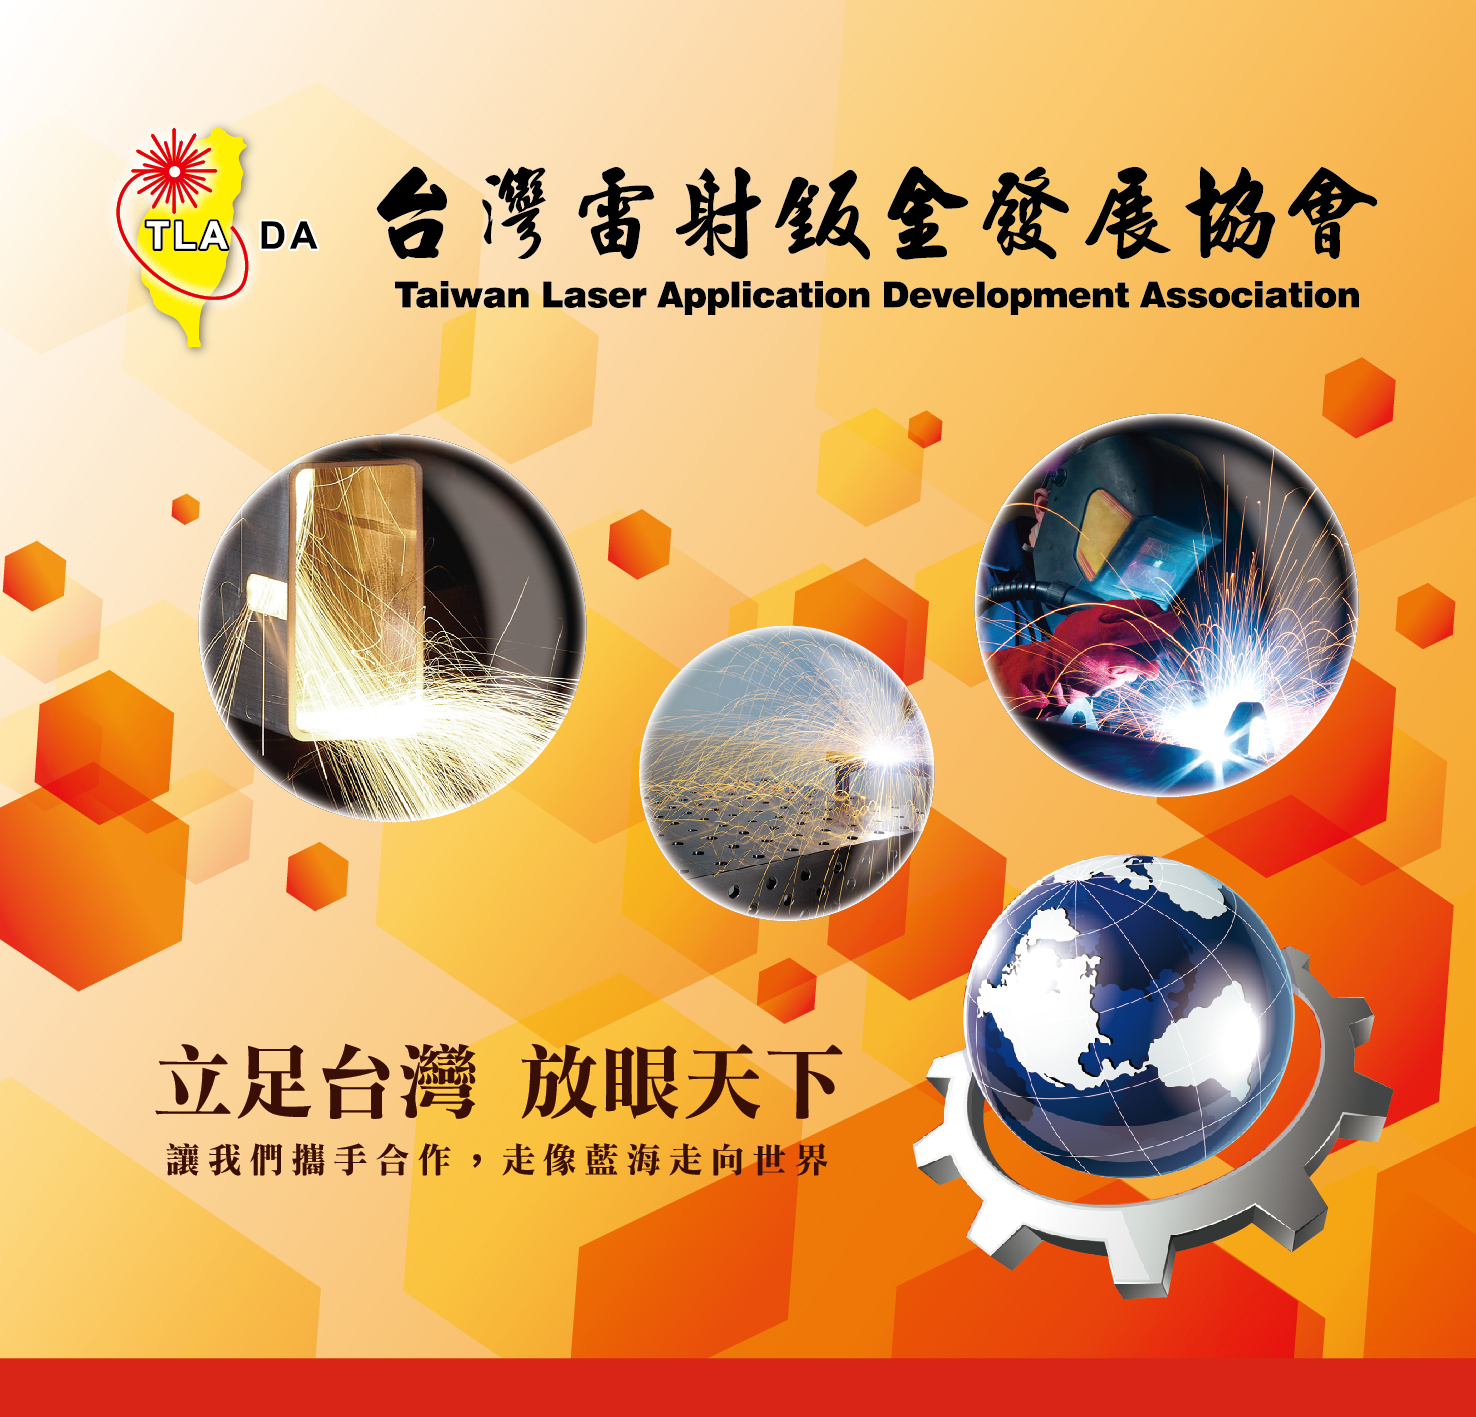 
                                台灣雷射鈑金發展協會形象廣告
                            